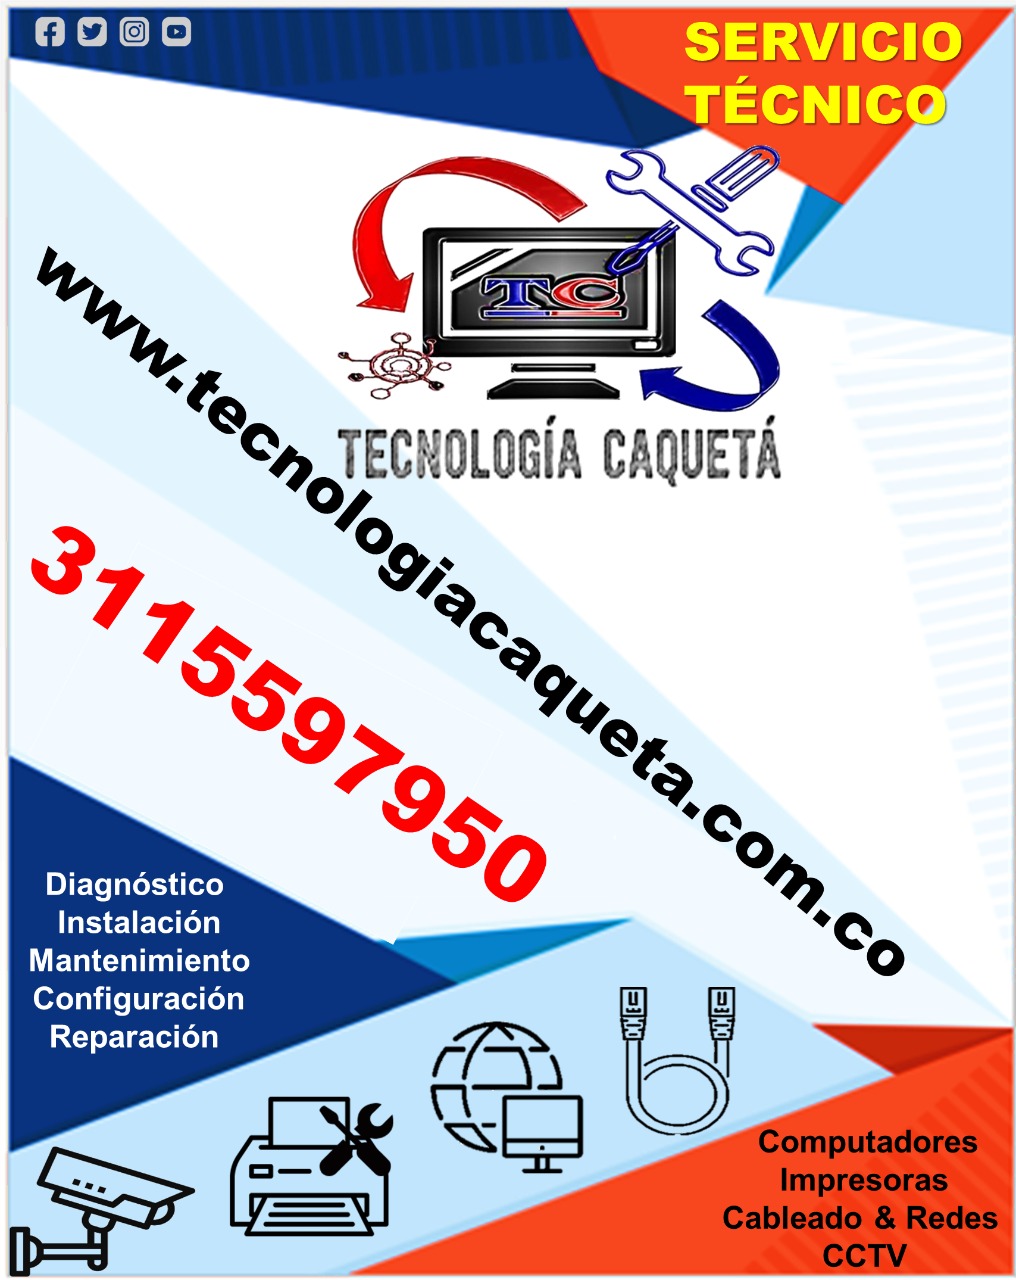 Web Servicios Tecnología Caquetá Domicilio TC